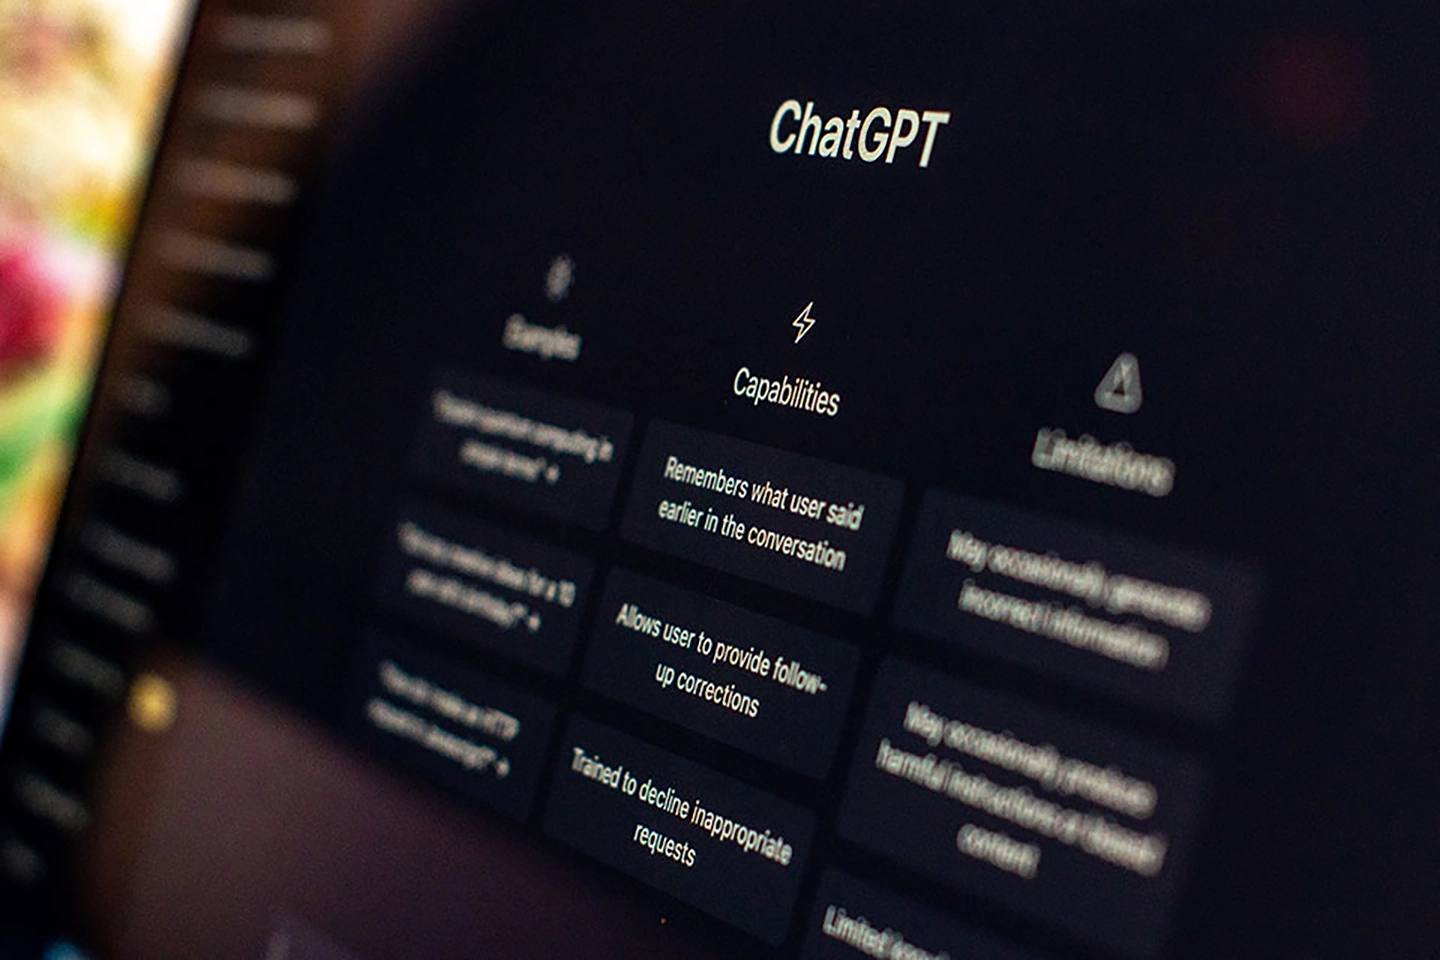 Computerbildschirm mit der Überschrift "ChatGPT" und einer Liste von Fähigkeiten in einem User Interface.